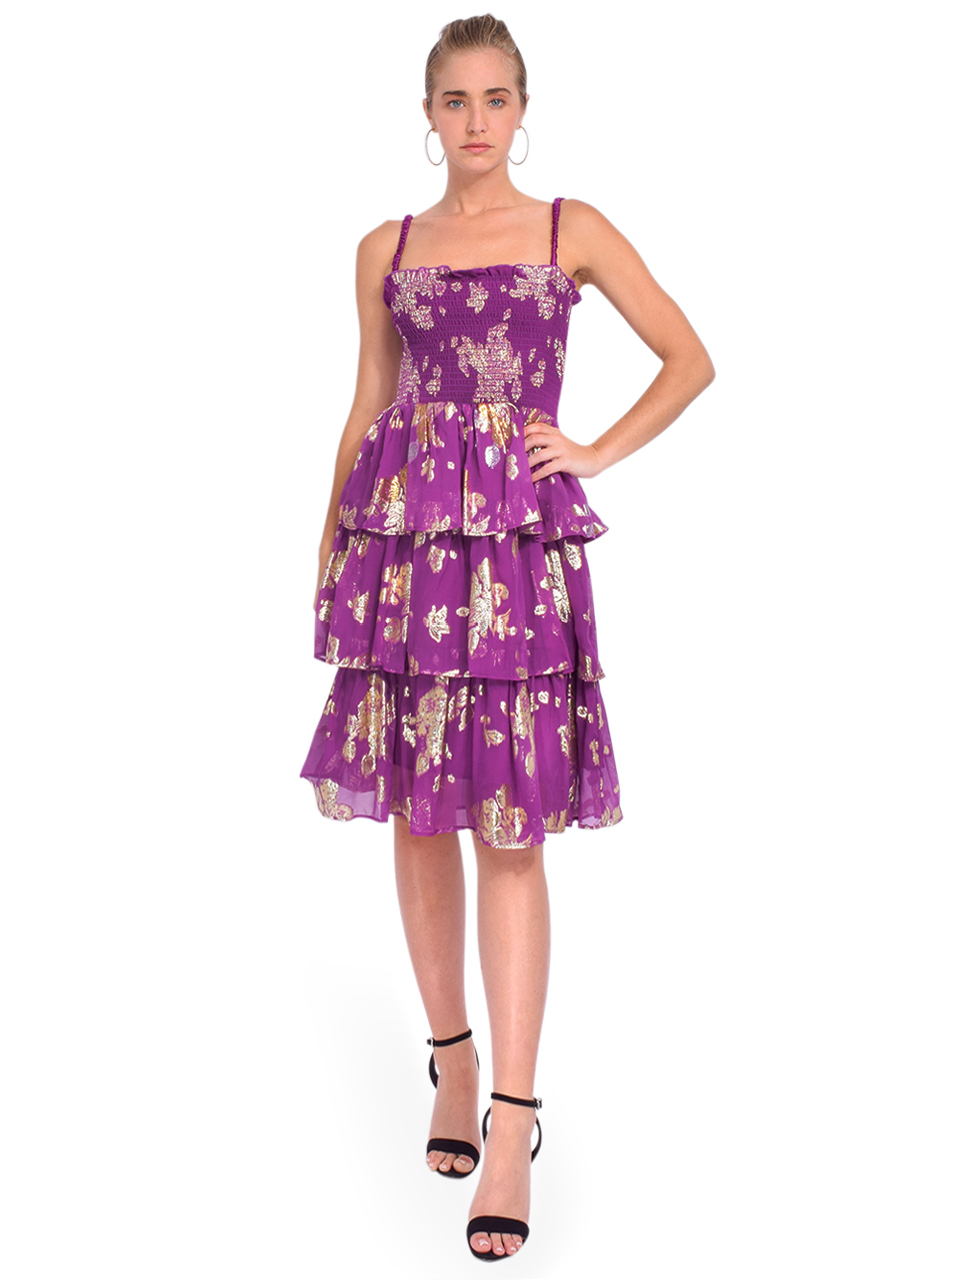 DELFI Martina Tiered Midi Dress in Purple Front View 2

